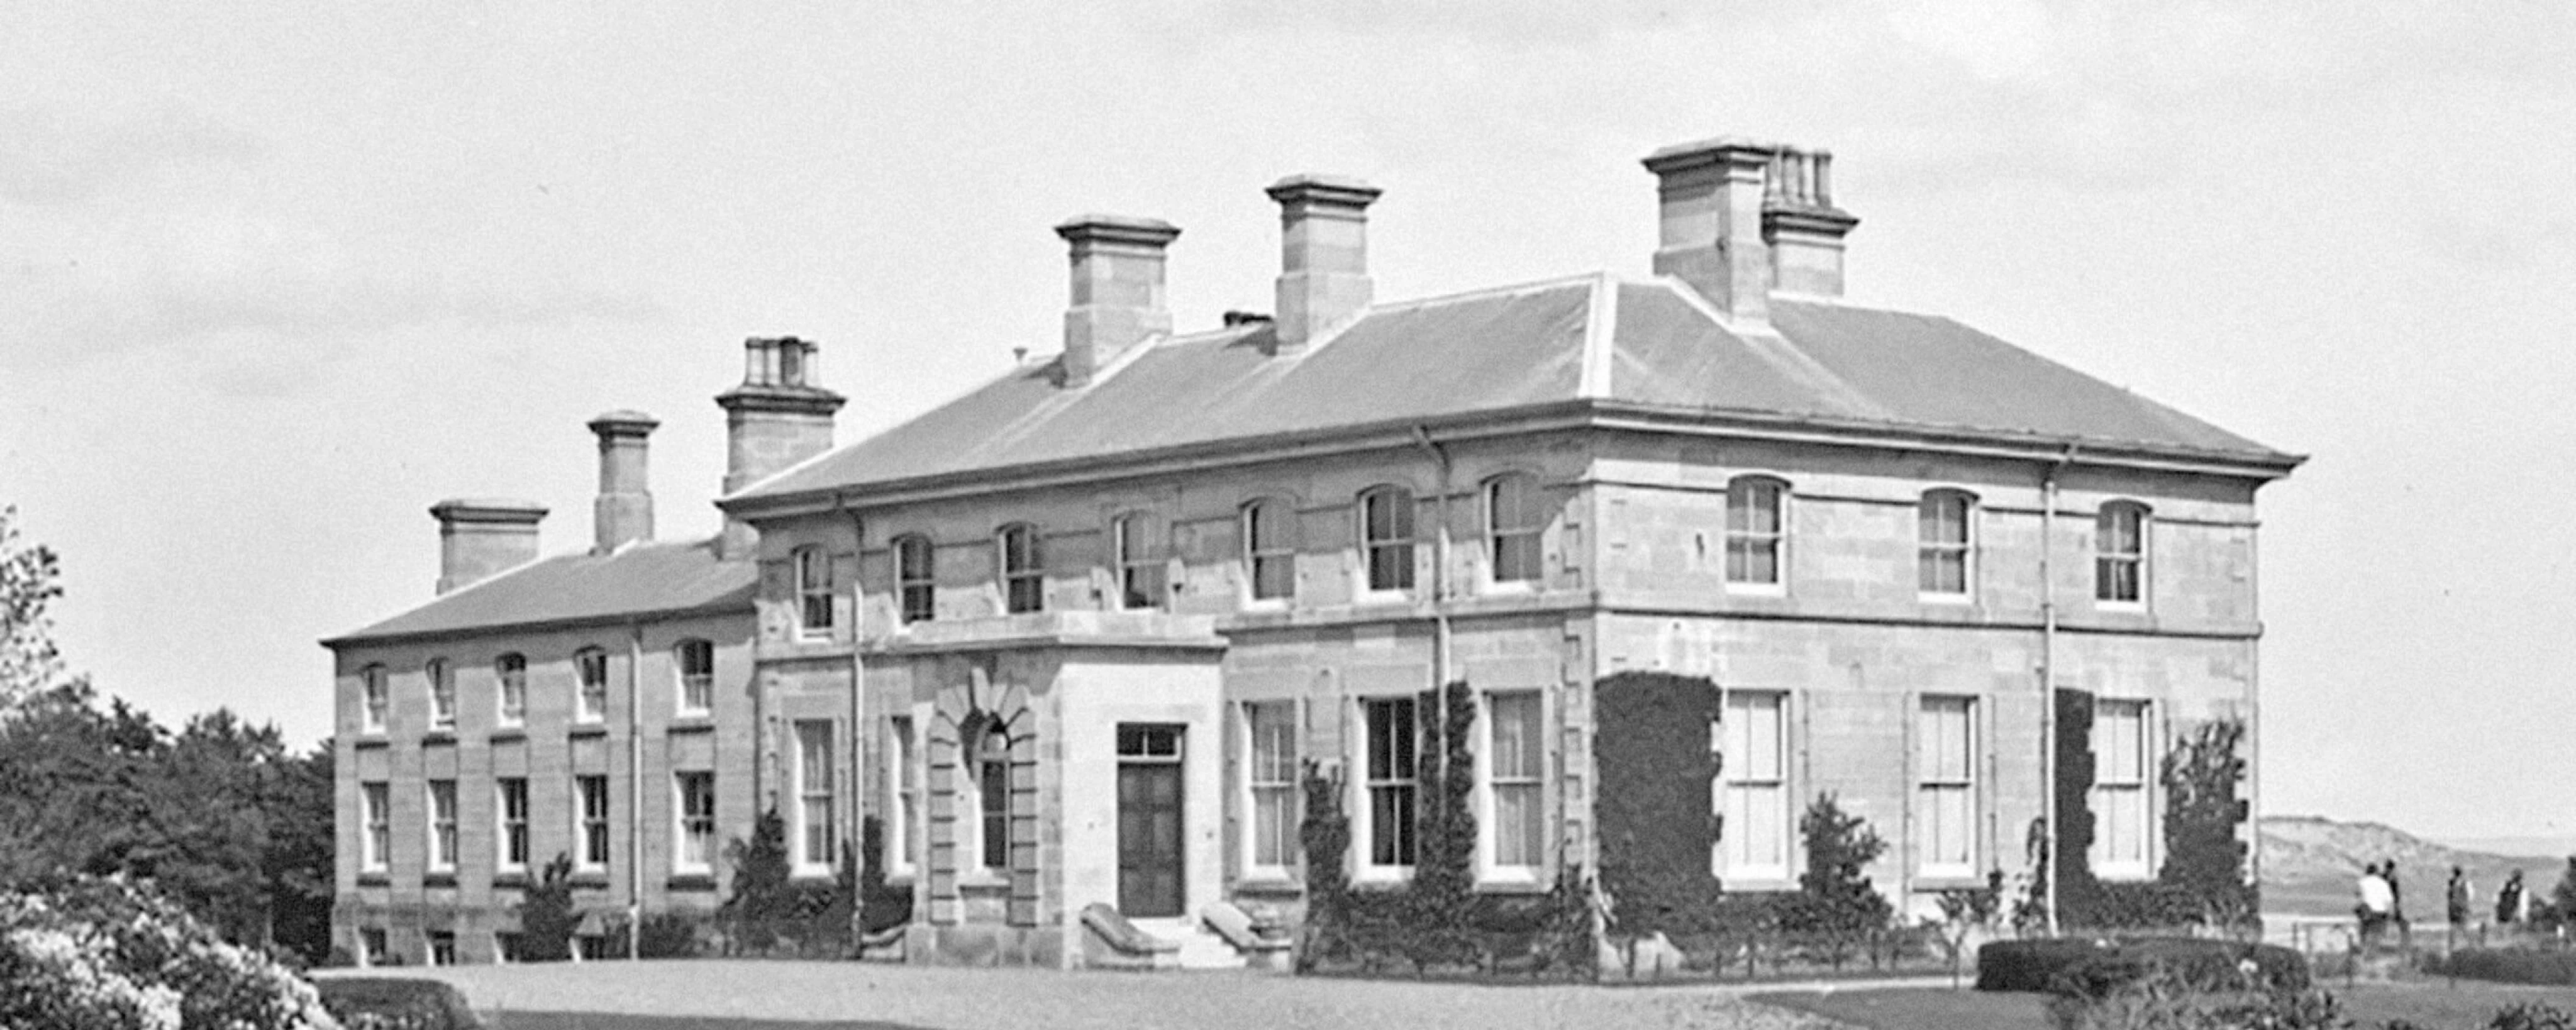 Murlough House circa 1900